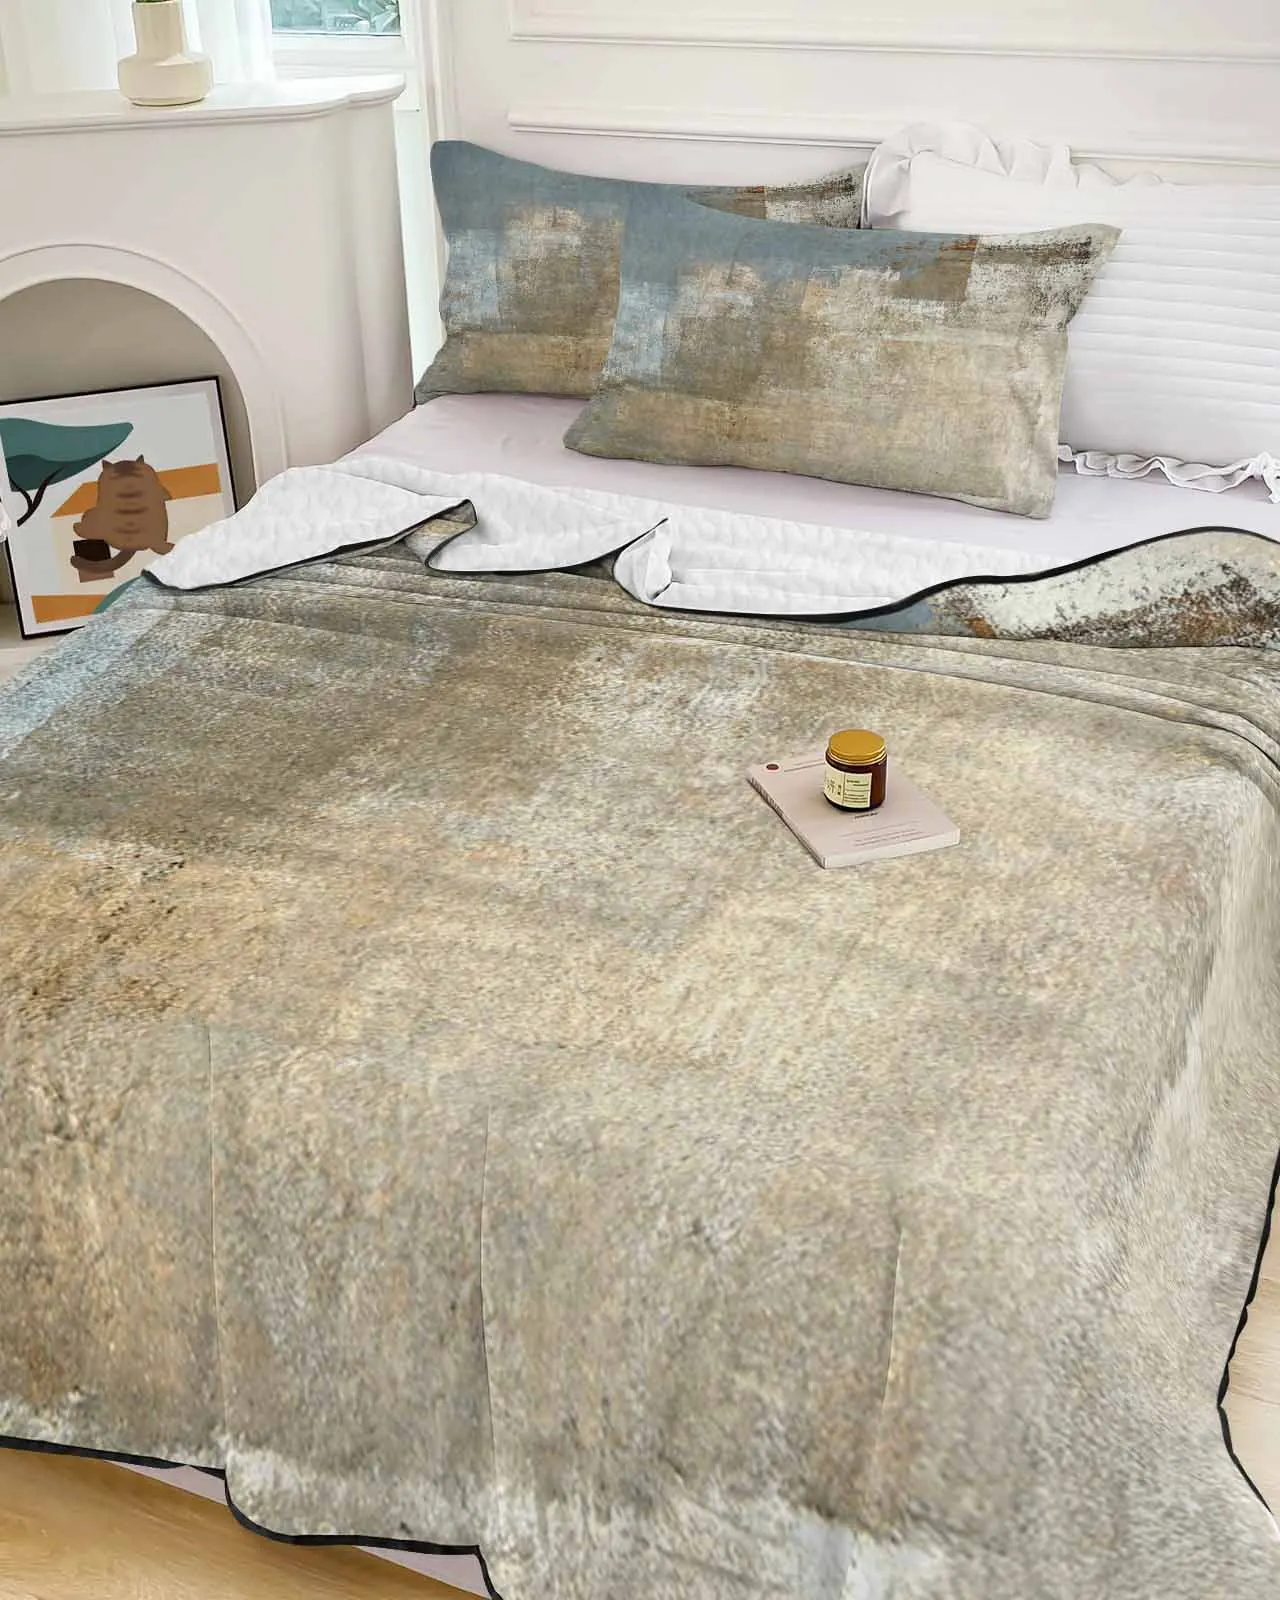 

Одеяло легкое летнее охлаждающее для кровати, легкое дышащее мягкое тонкое покрывало с абстрактным рисунком масляной живописи, воздушное